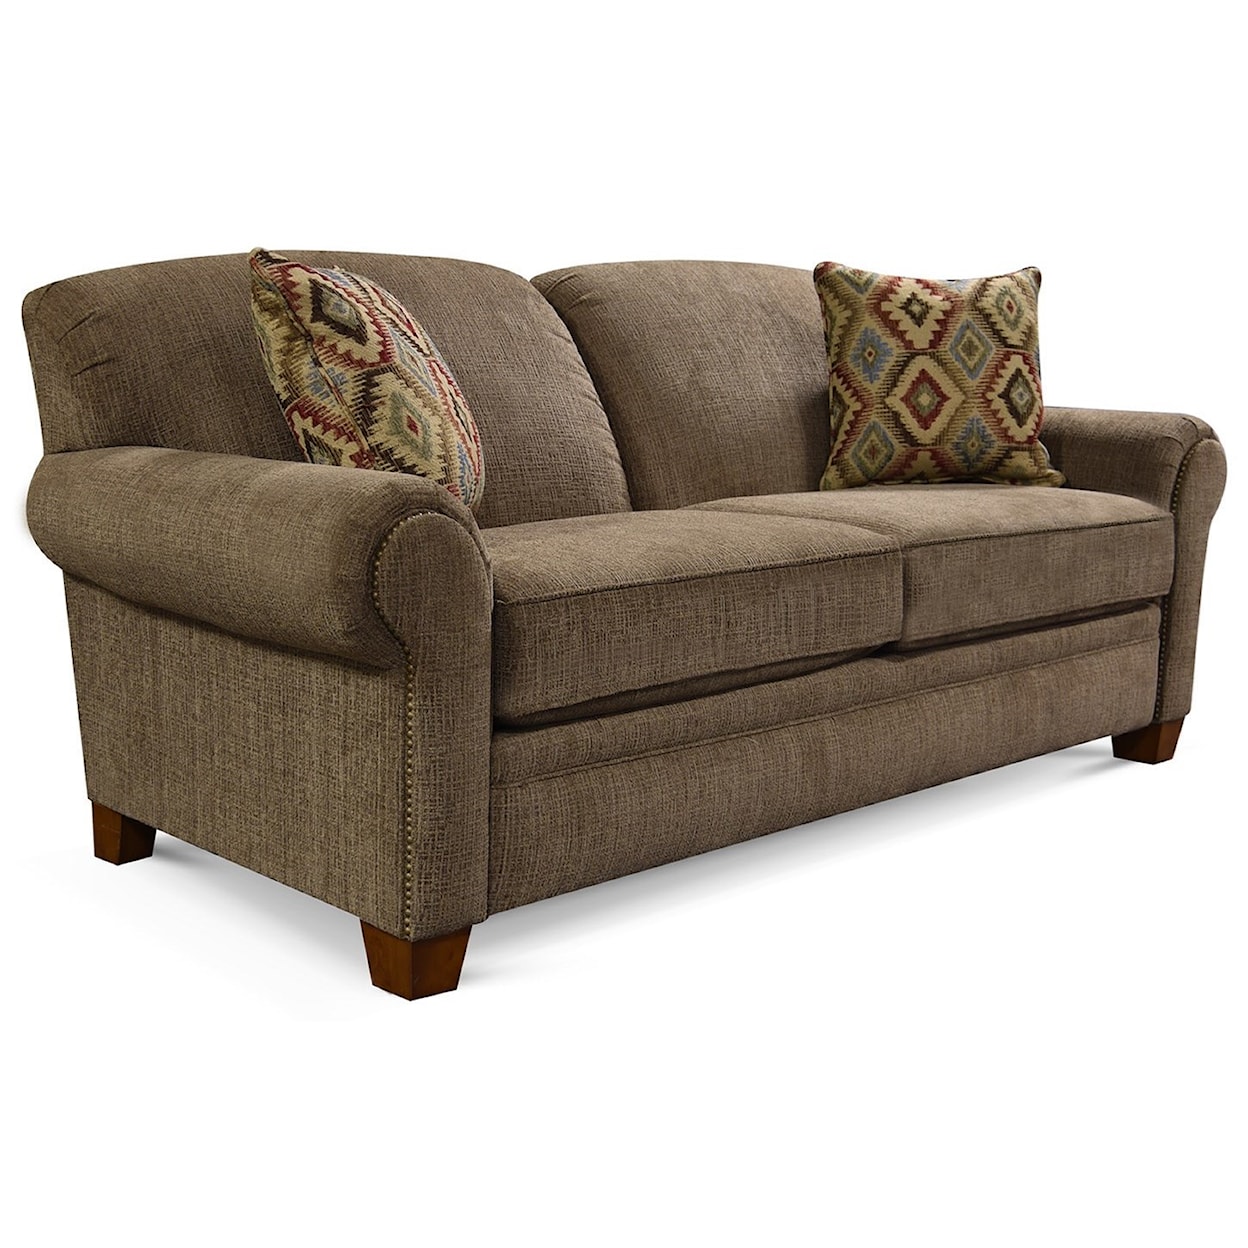 England 1250 Series Upholstered Sofa